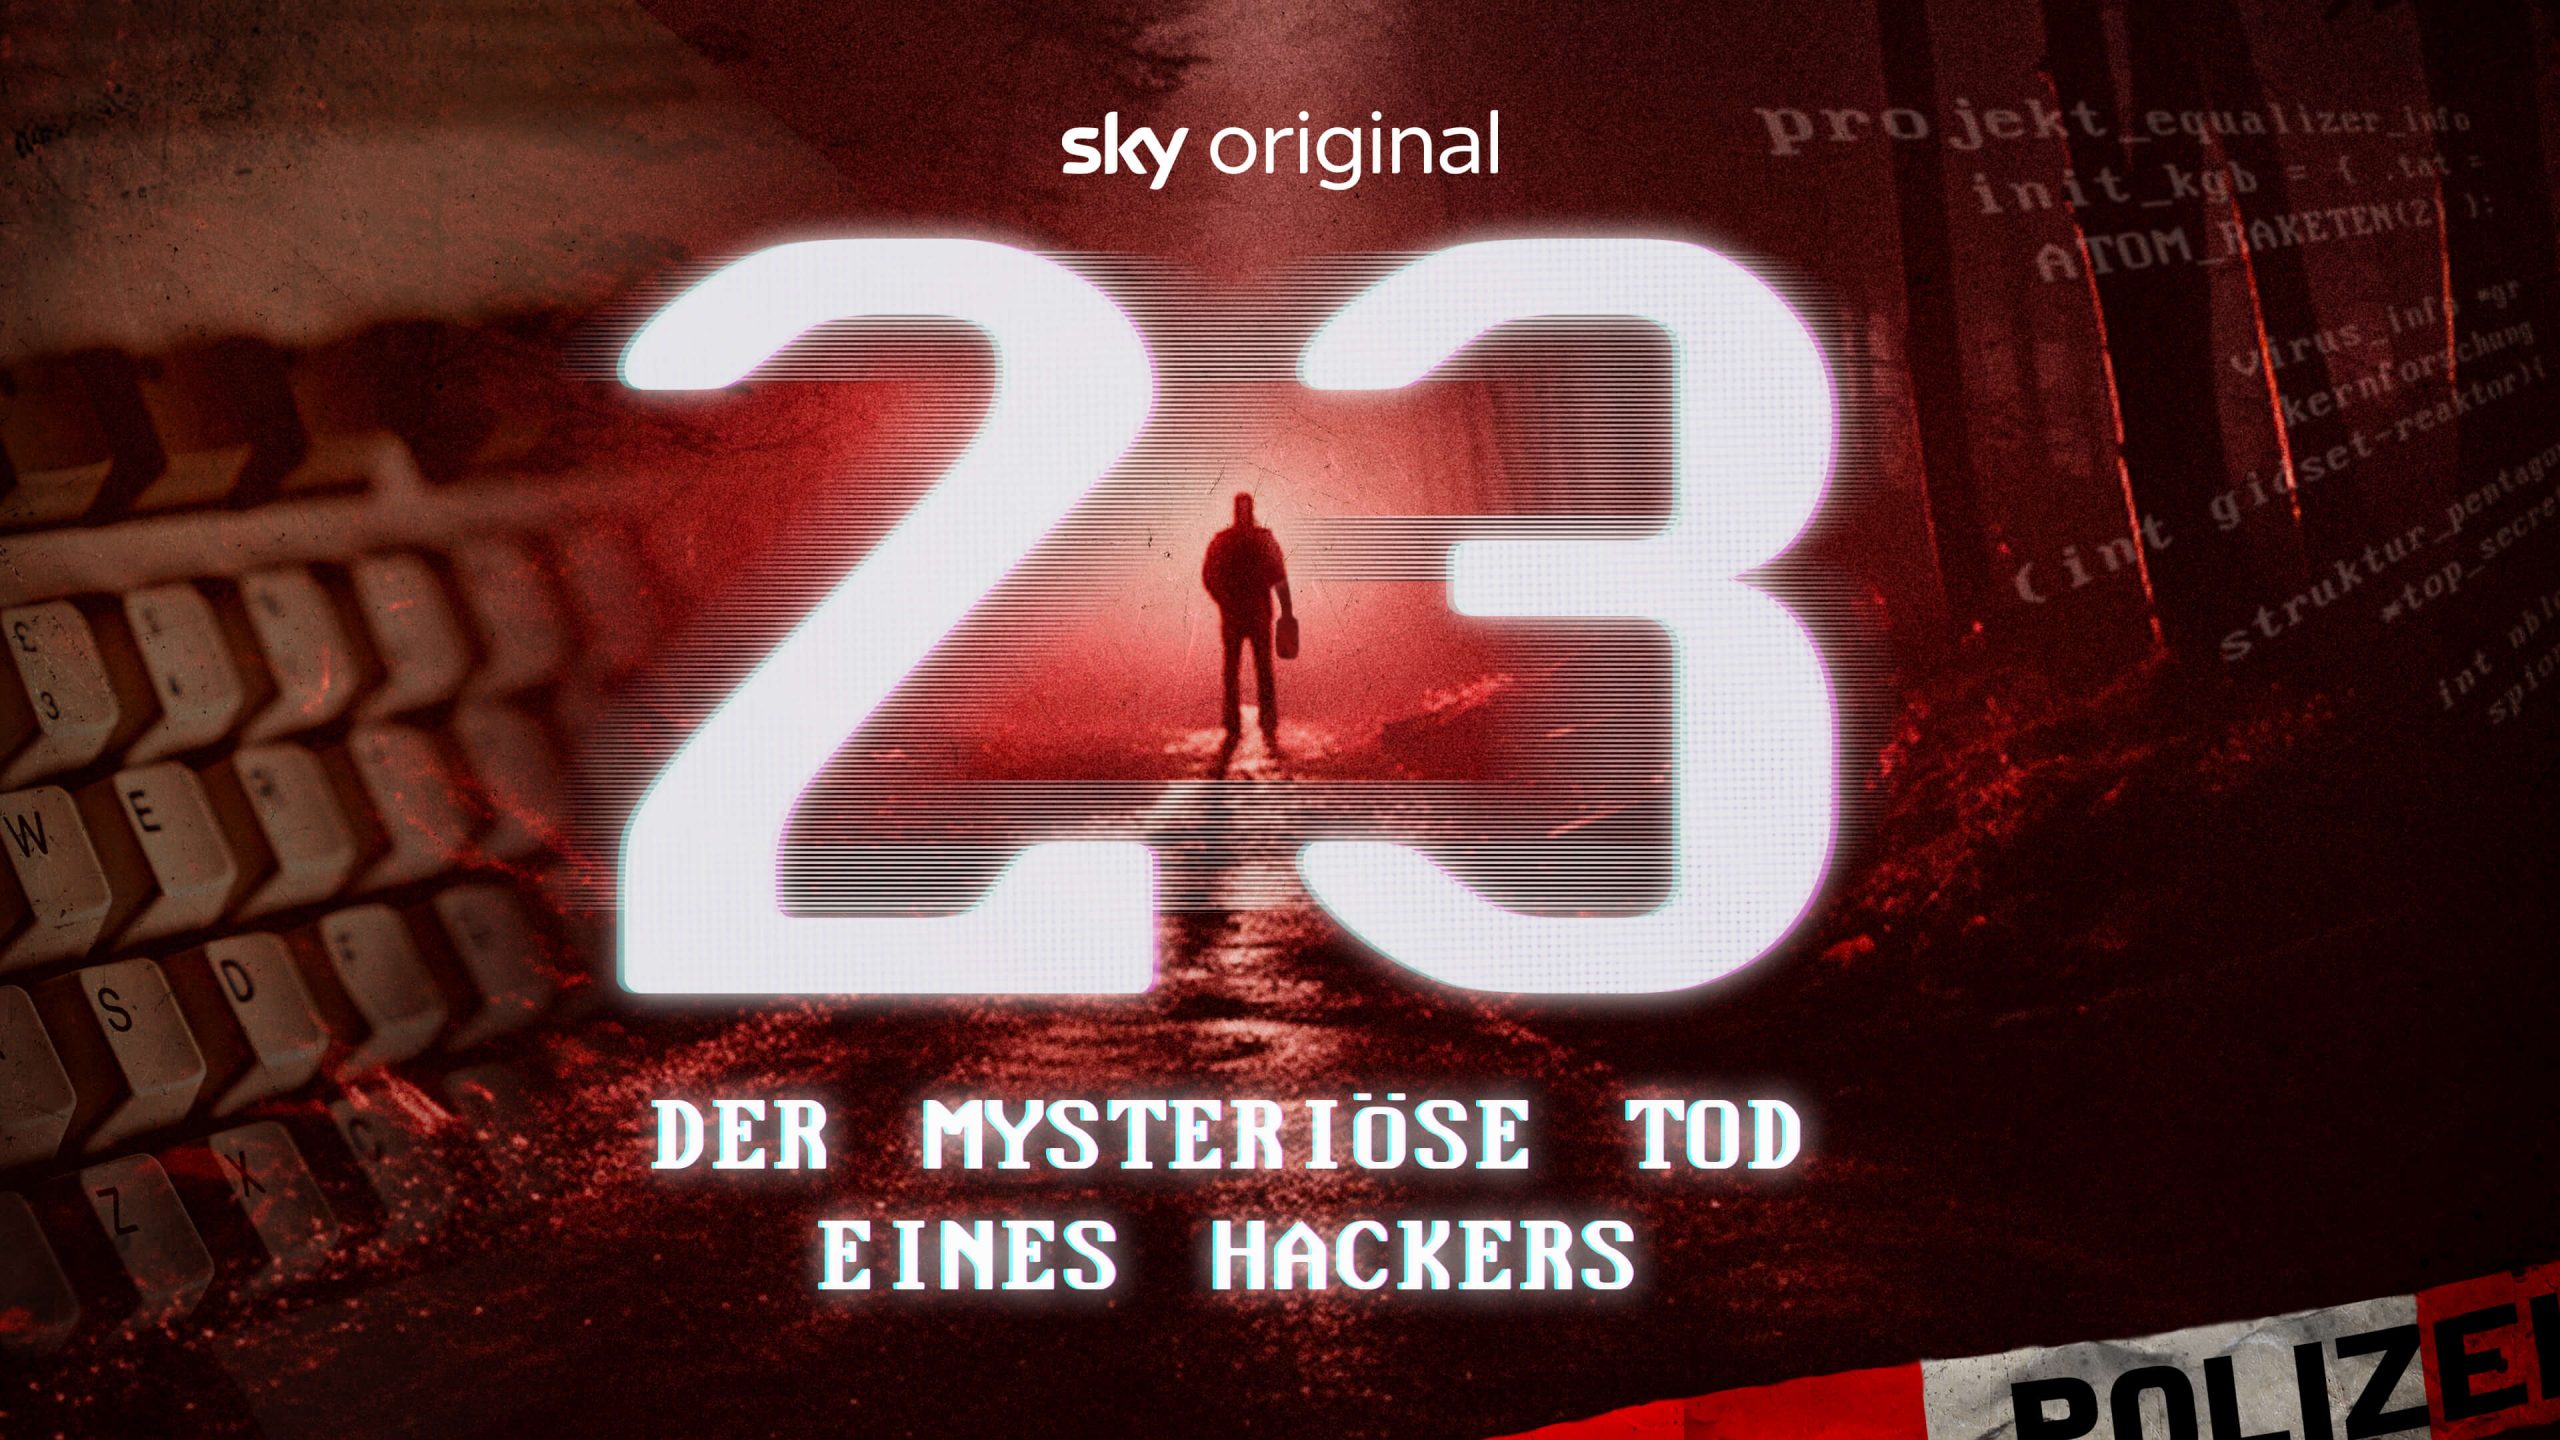 cinemars-23-der-mysterrioese-tod-einers-hackers